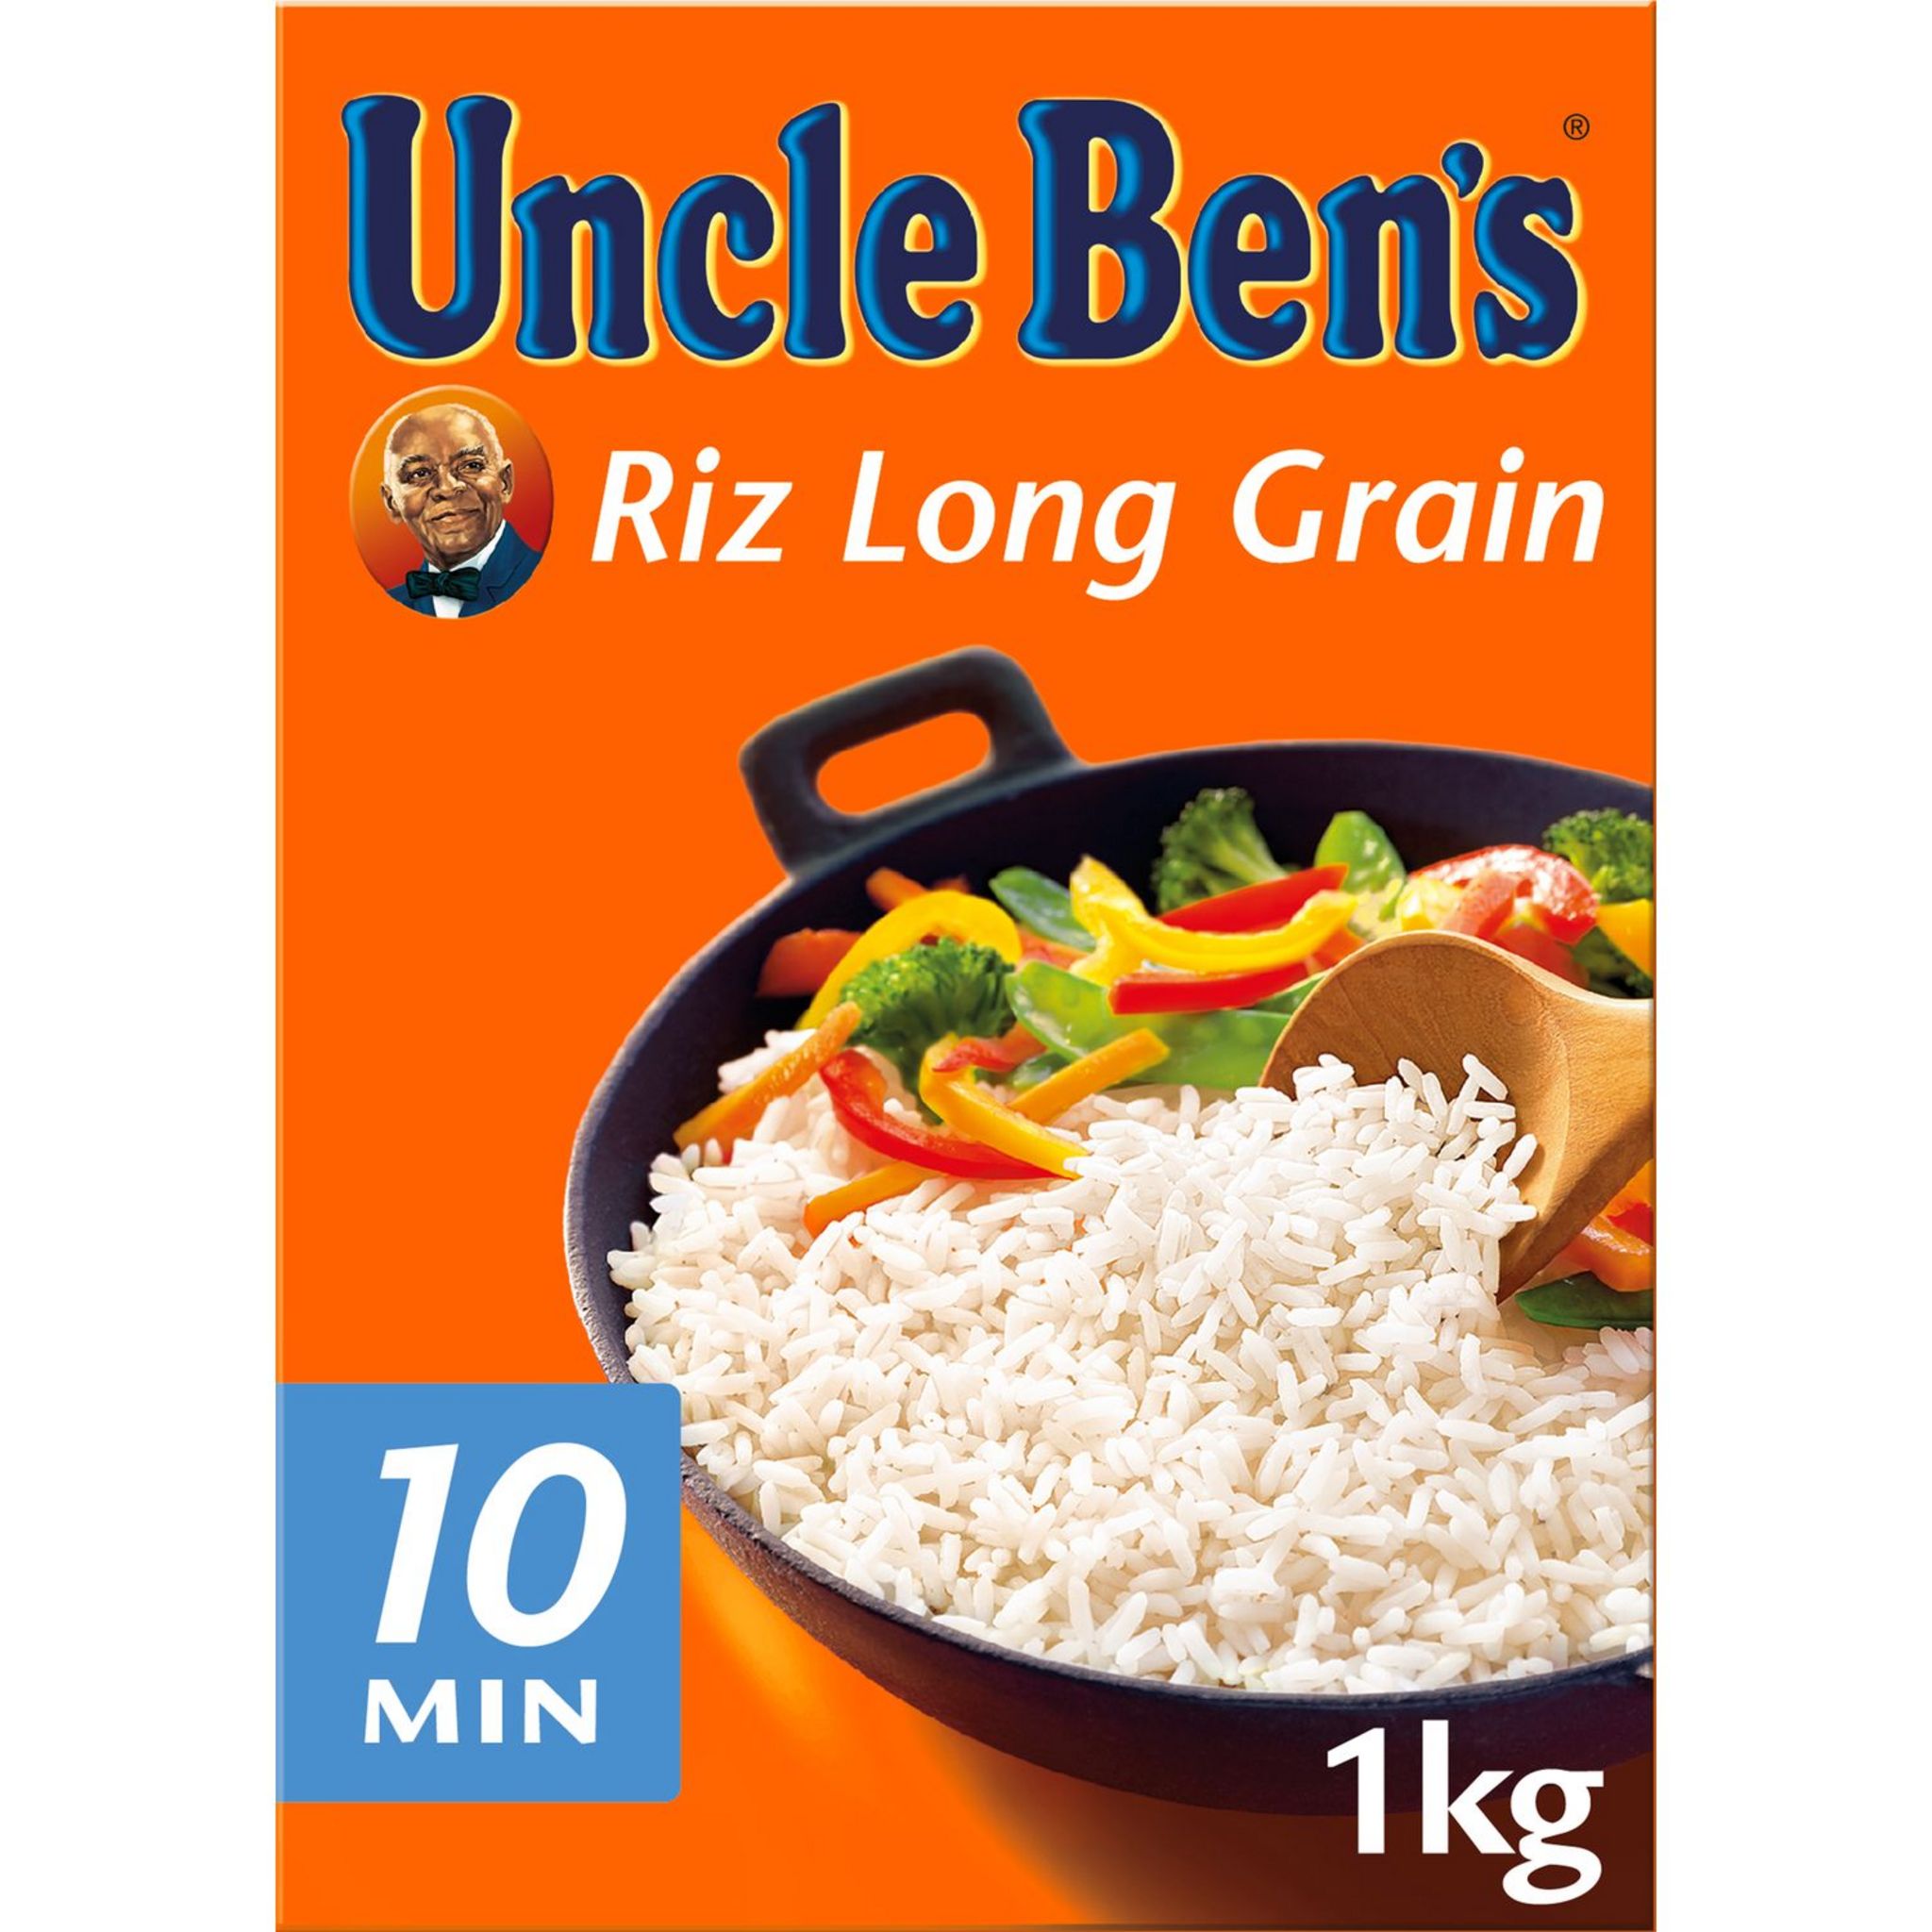 Ben's Original Riz long grain, 1kg